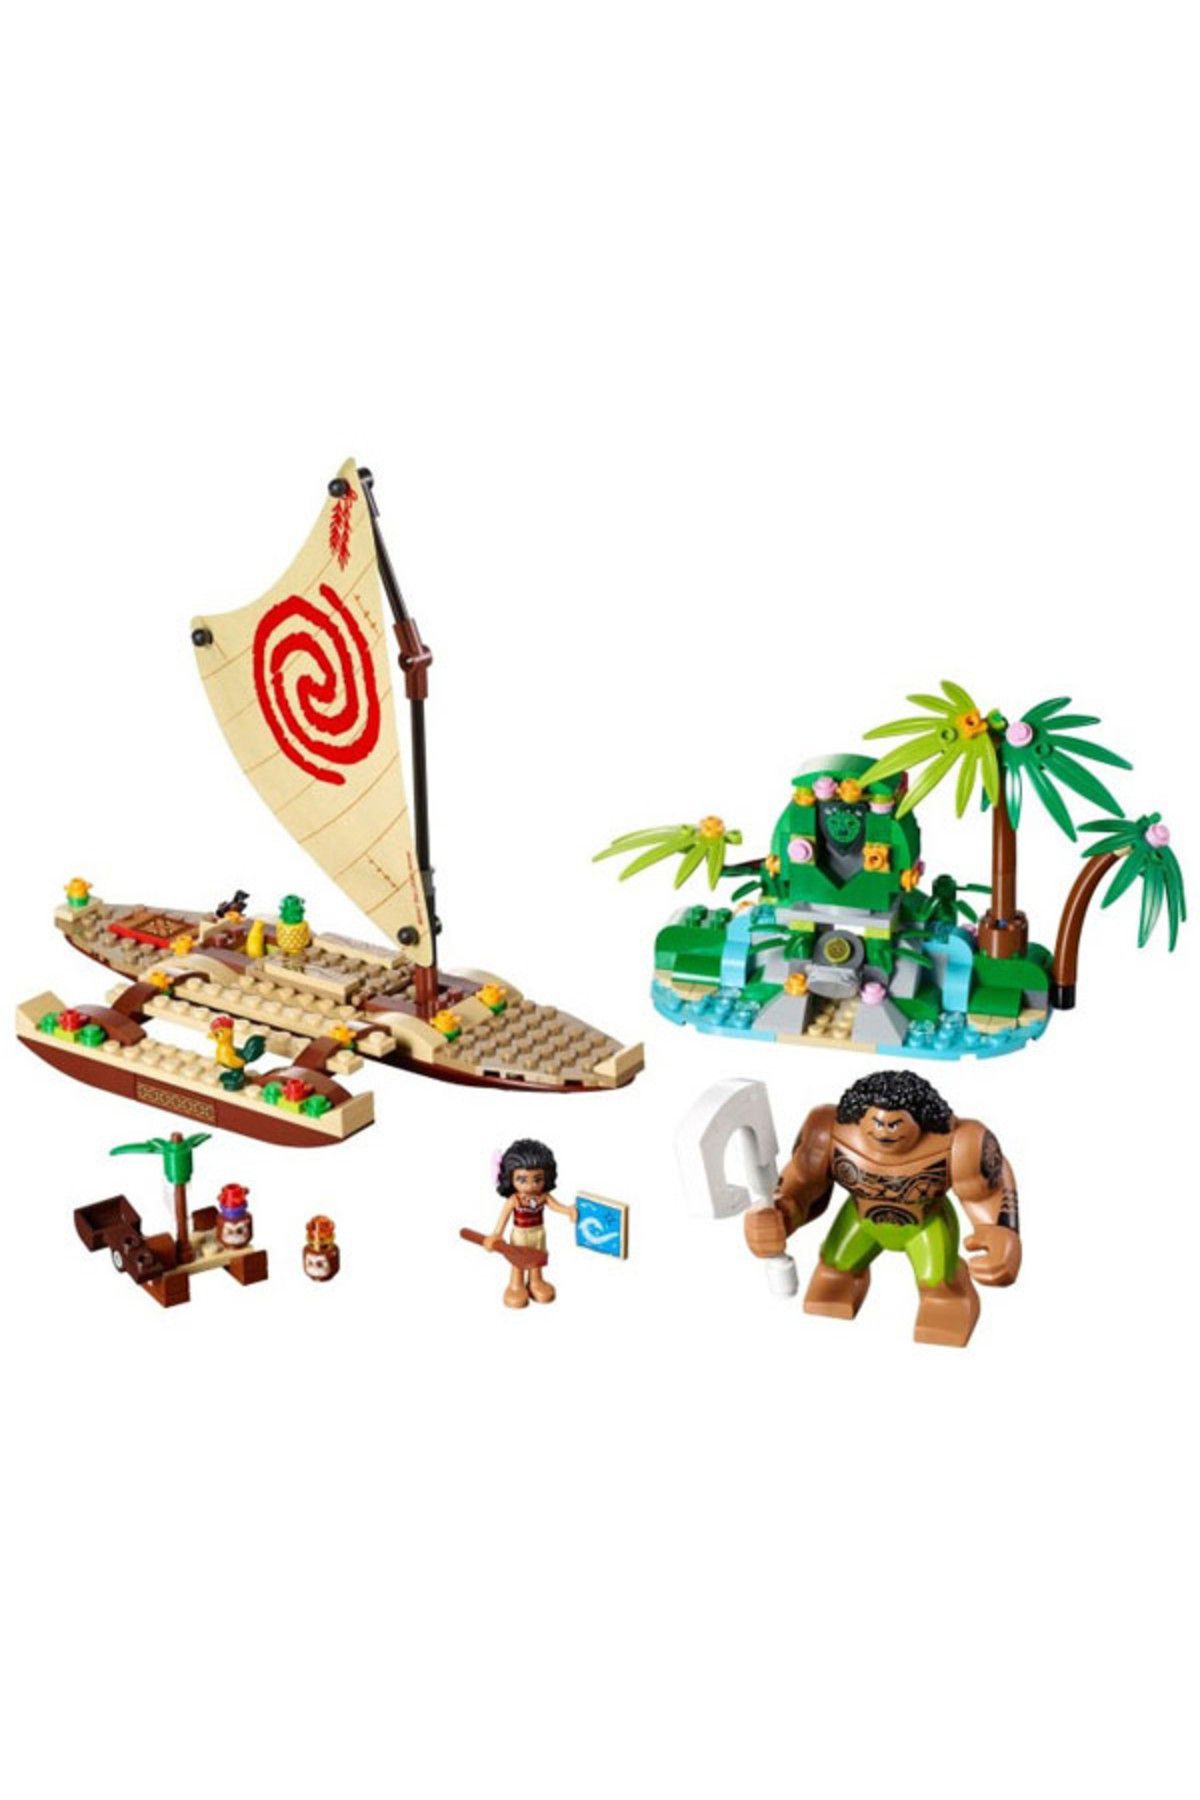 LEGO Disney Priencess Moanas Ocean Voy 41150